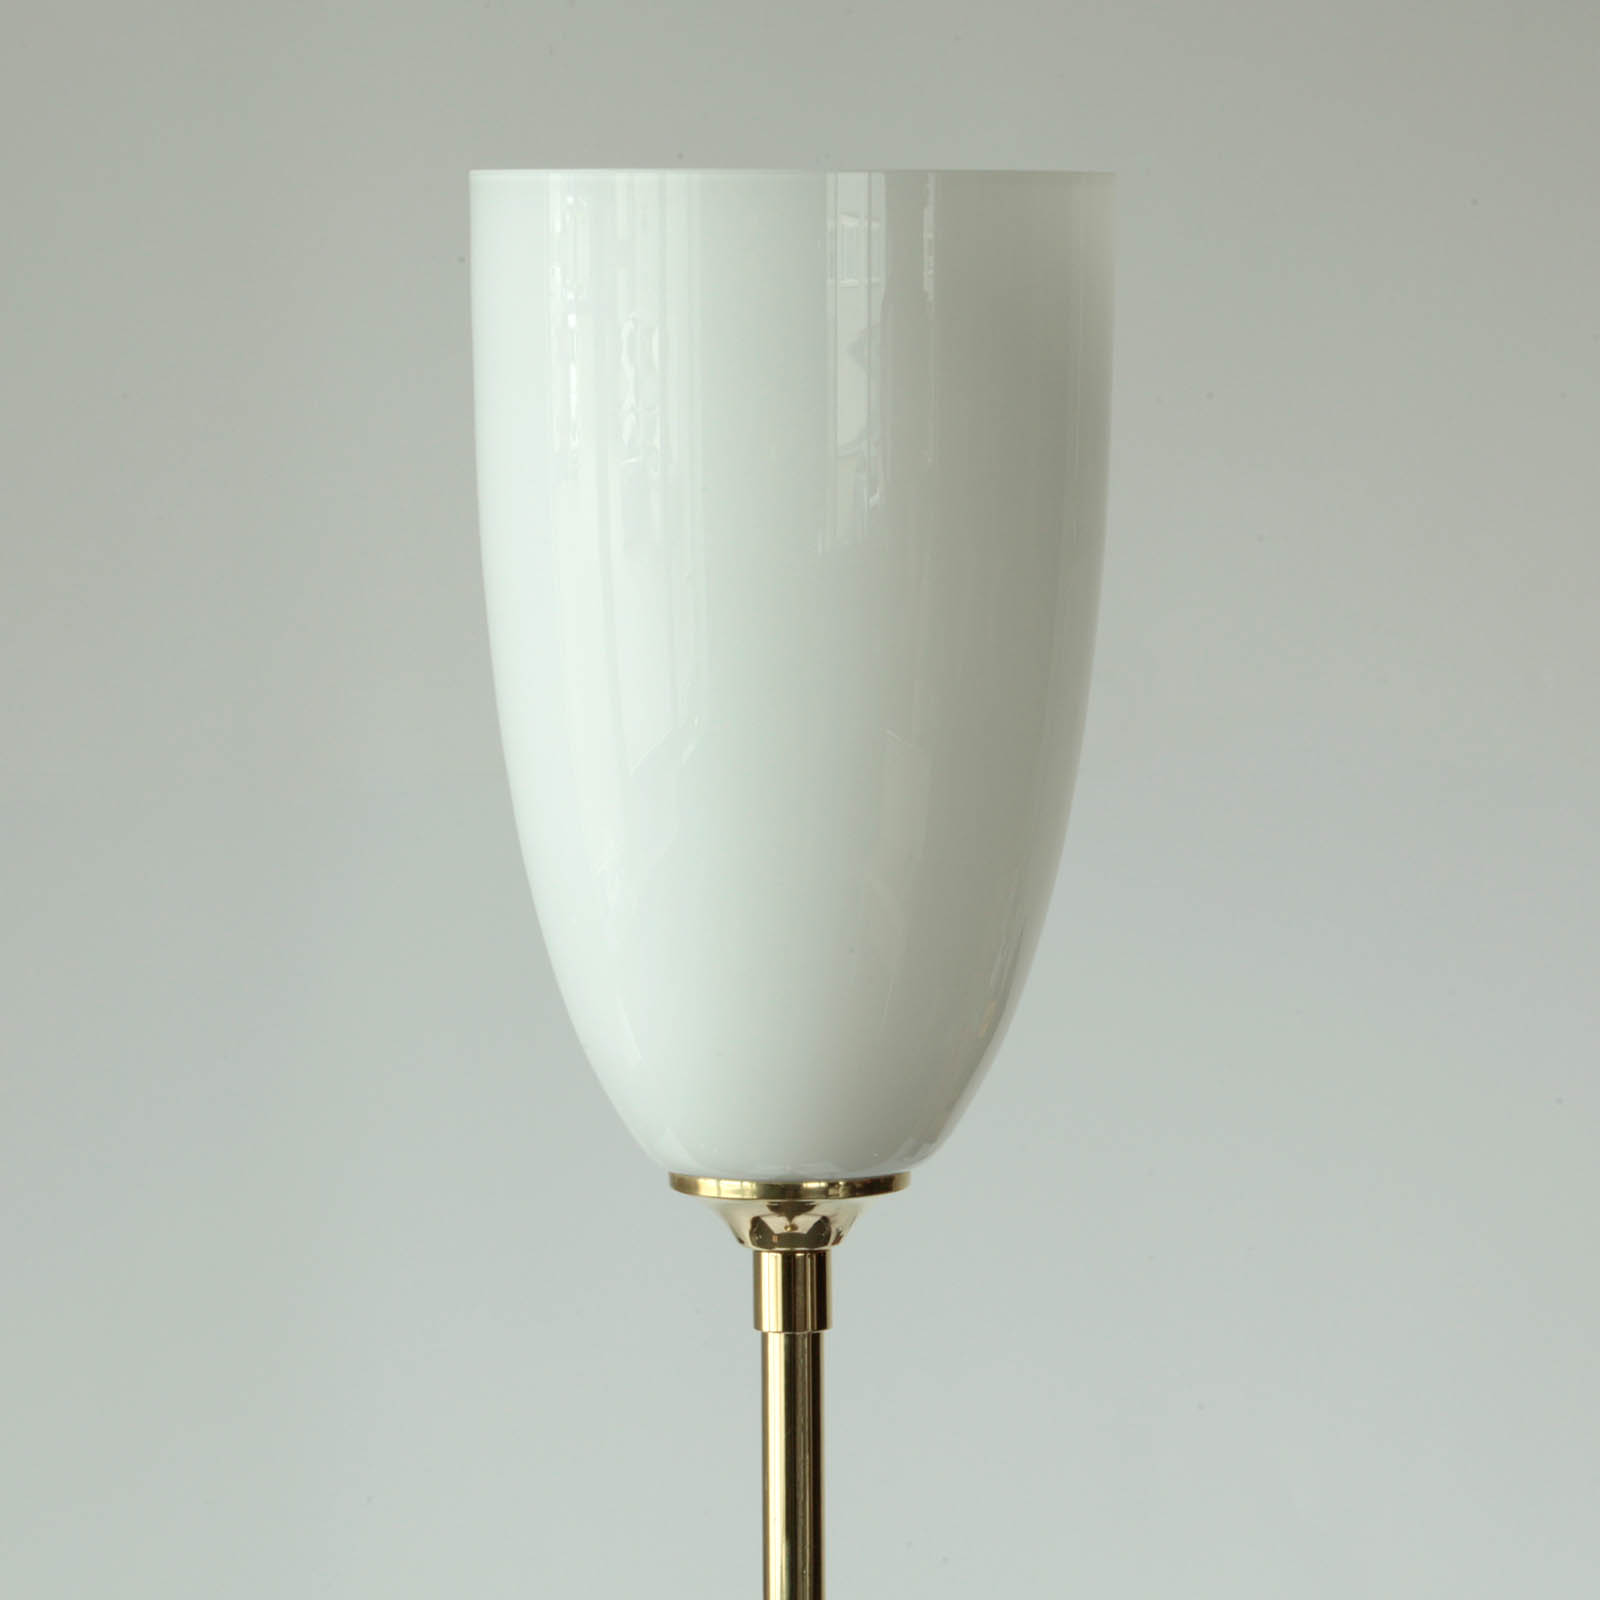 Art déco-Deckenfluter mit Kelch-Glasschirm: Messing poliert und lackiert mit weiß glänzendem Opalglas